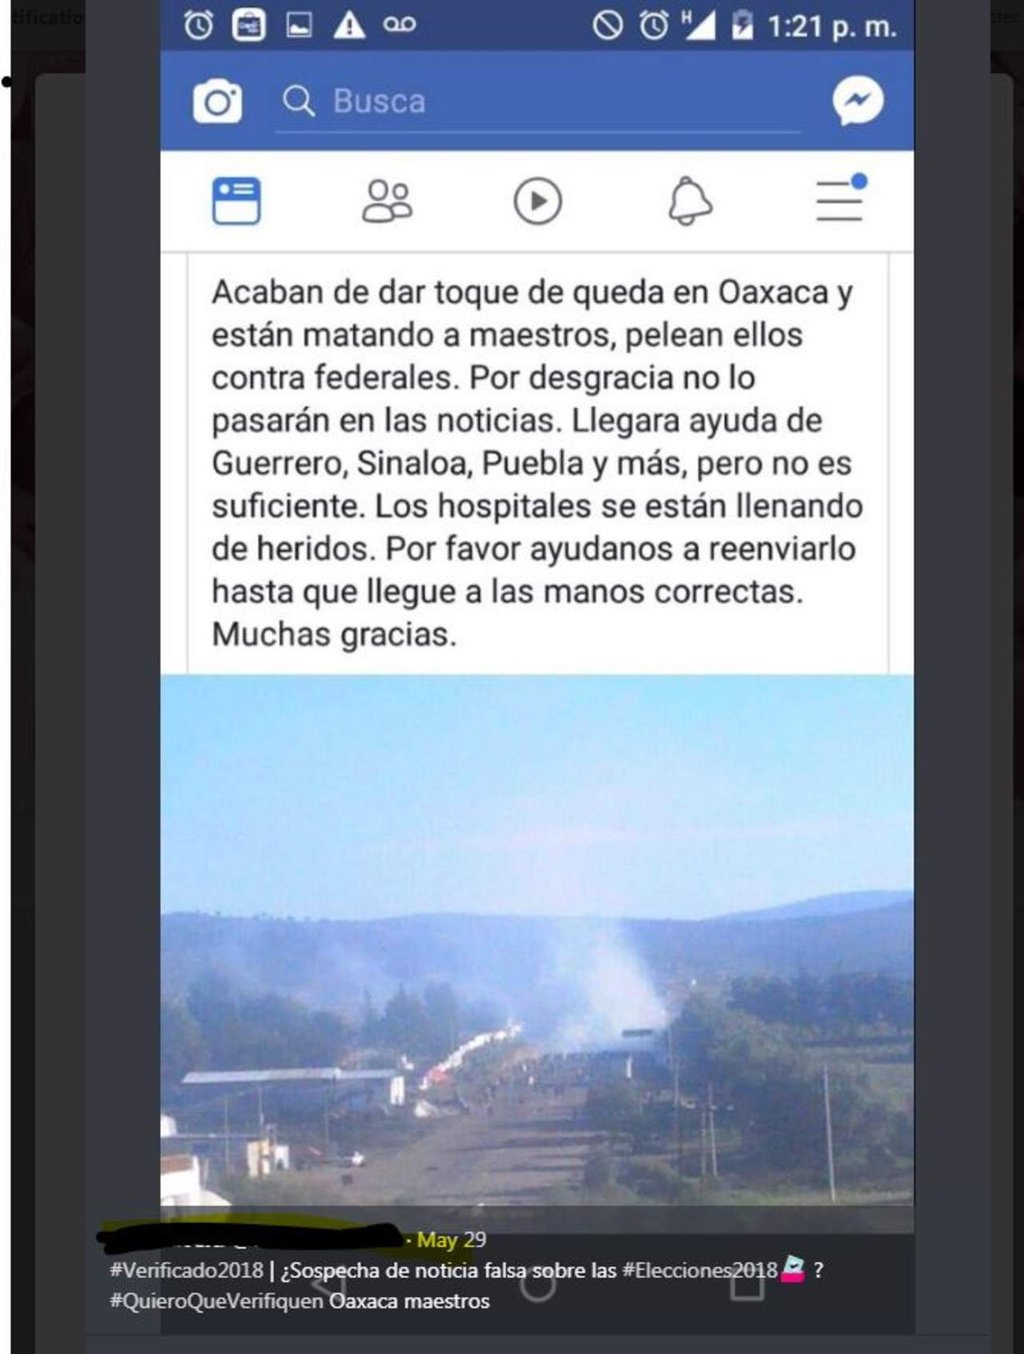 Una imagen y un mensaje del operativo de 2016 en Nochixtlán, Oaxaca, se difunde como si fuera un enfrentamiento actual